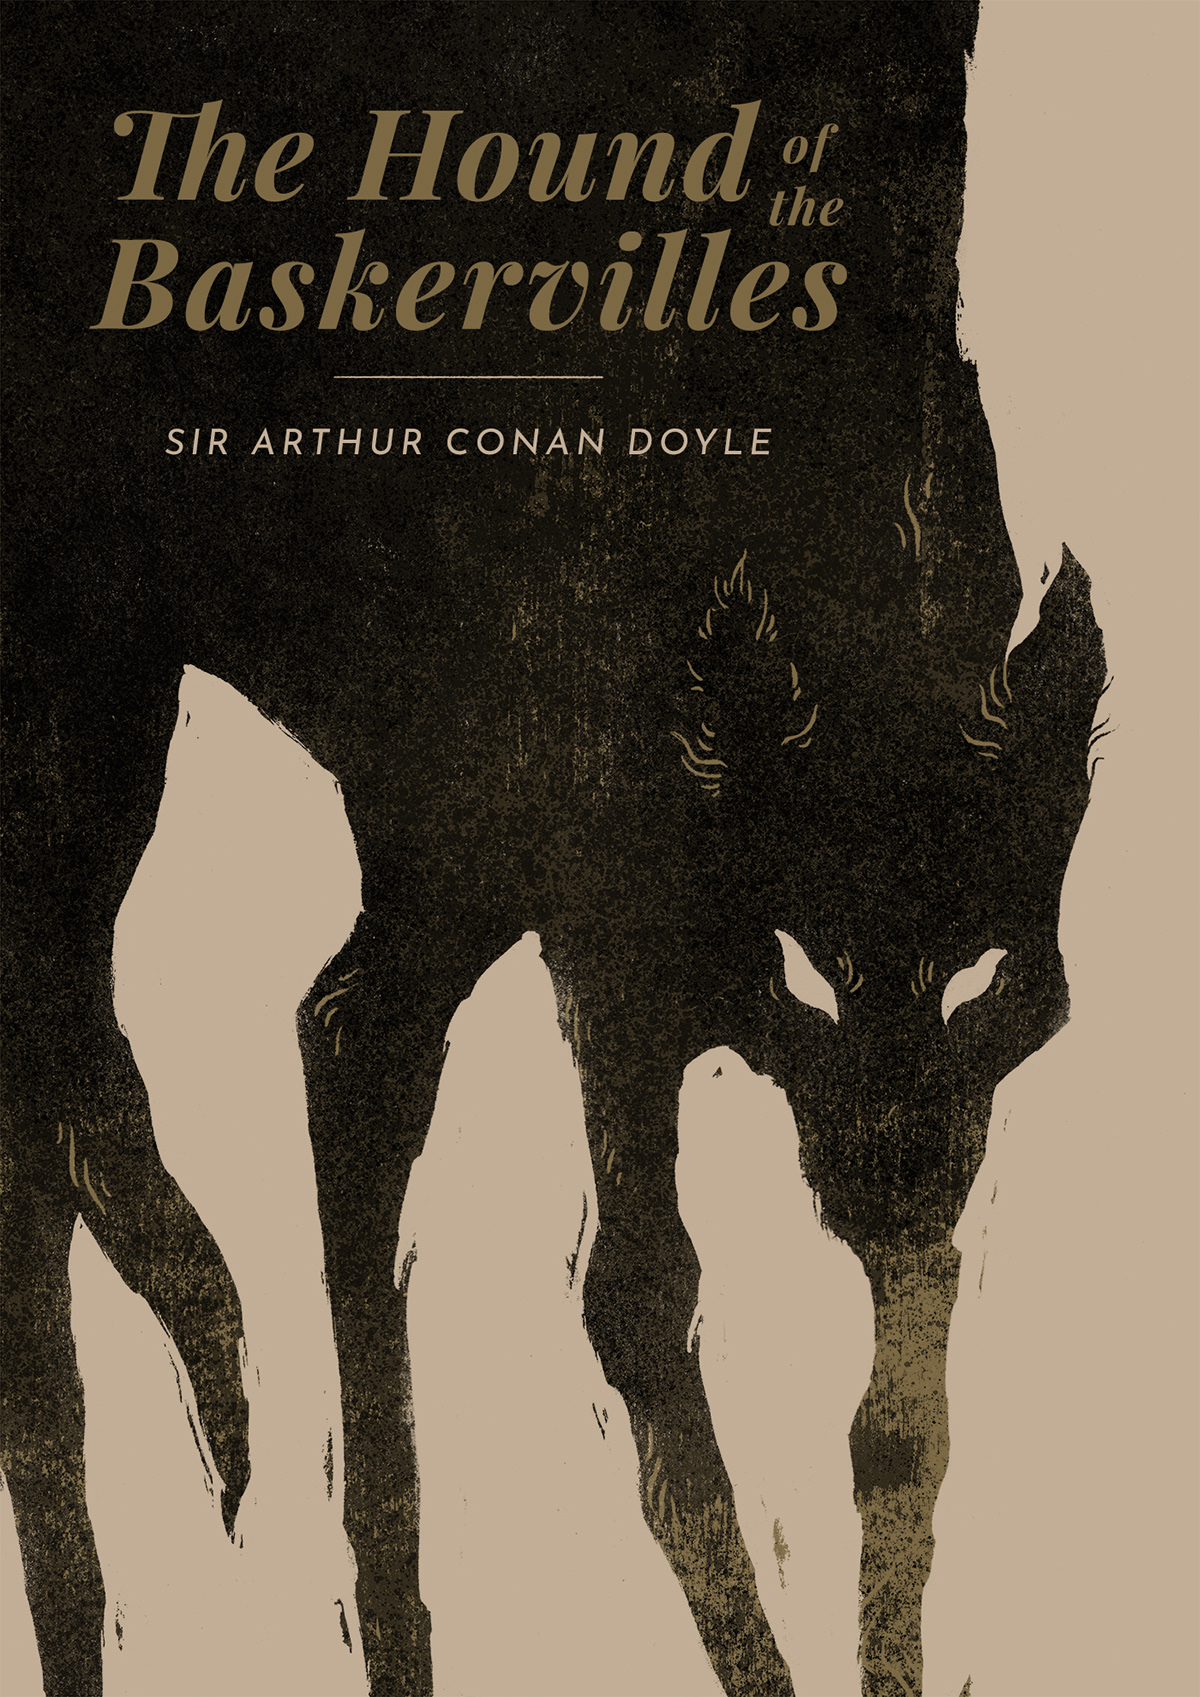 book cover book hound dog baskervilles Sherlock Holmes arthur conan doyle detective texture